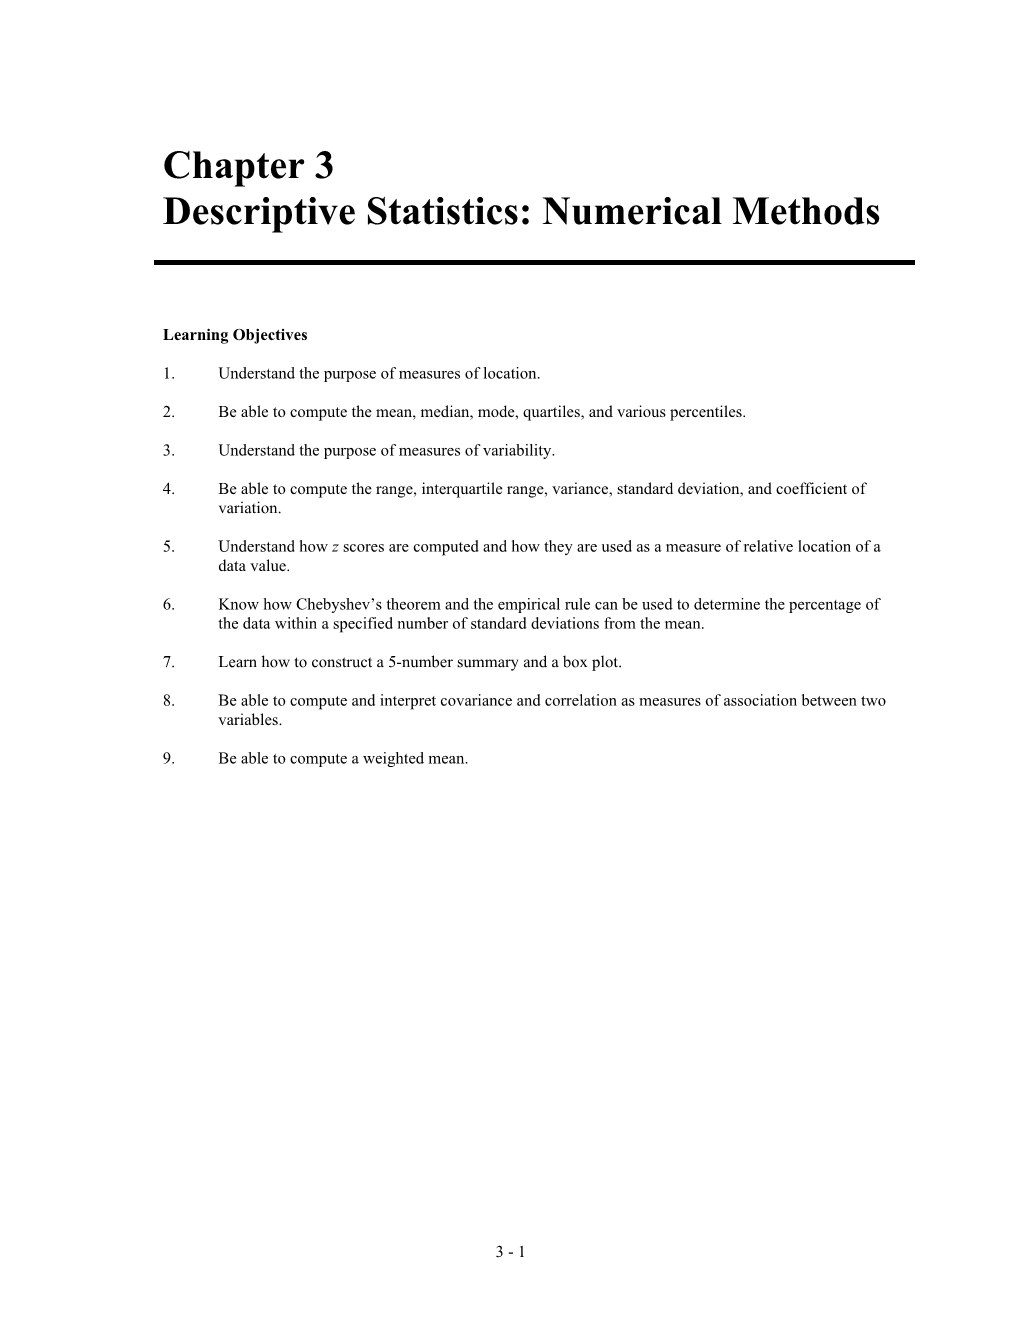 Descriptive Statistics: Numerical Methods